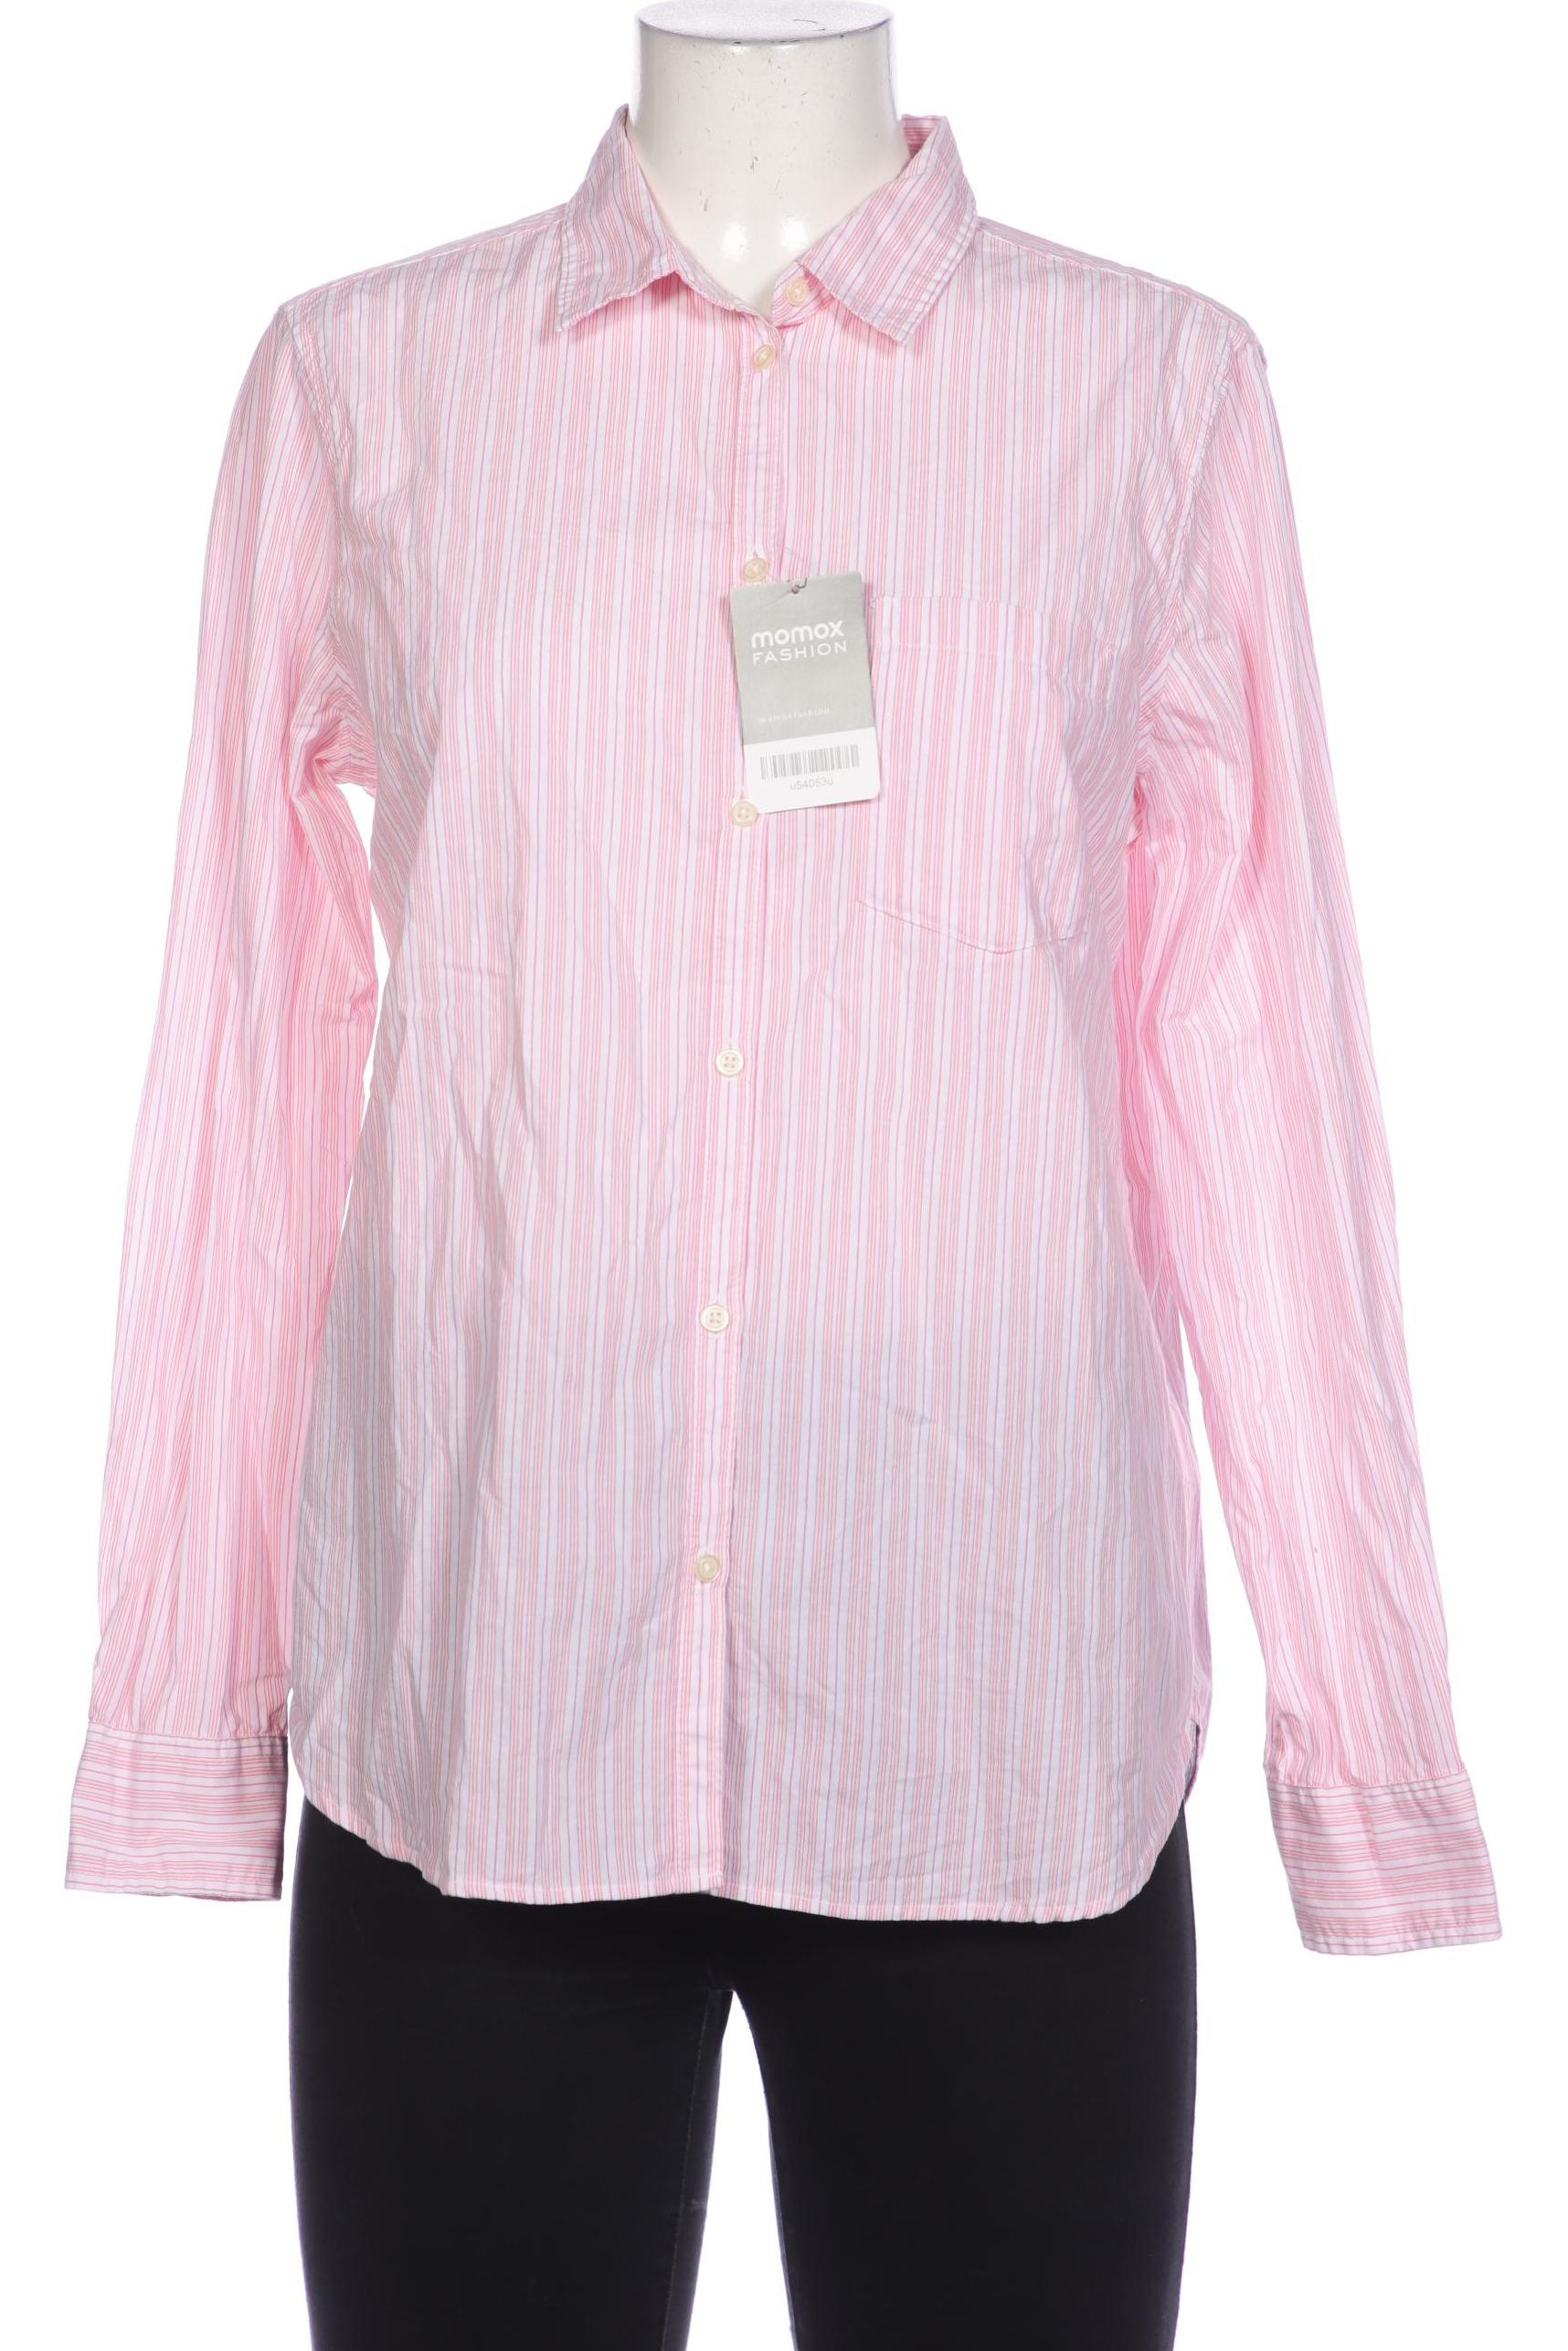 GAP Damen Bluse, pink, Gr. 42 von GAP